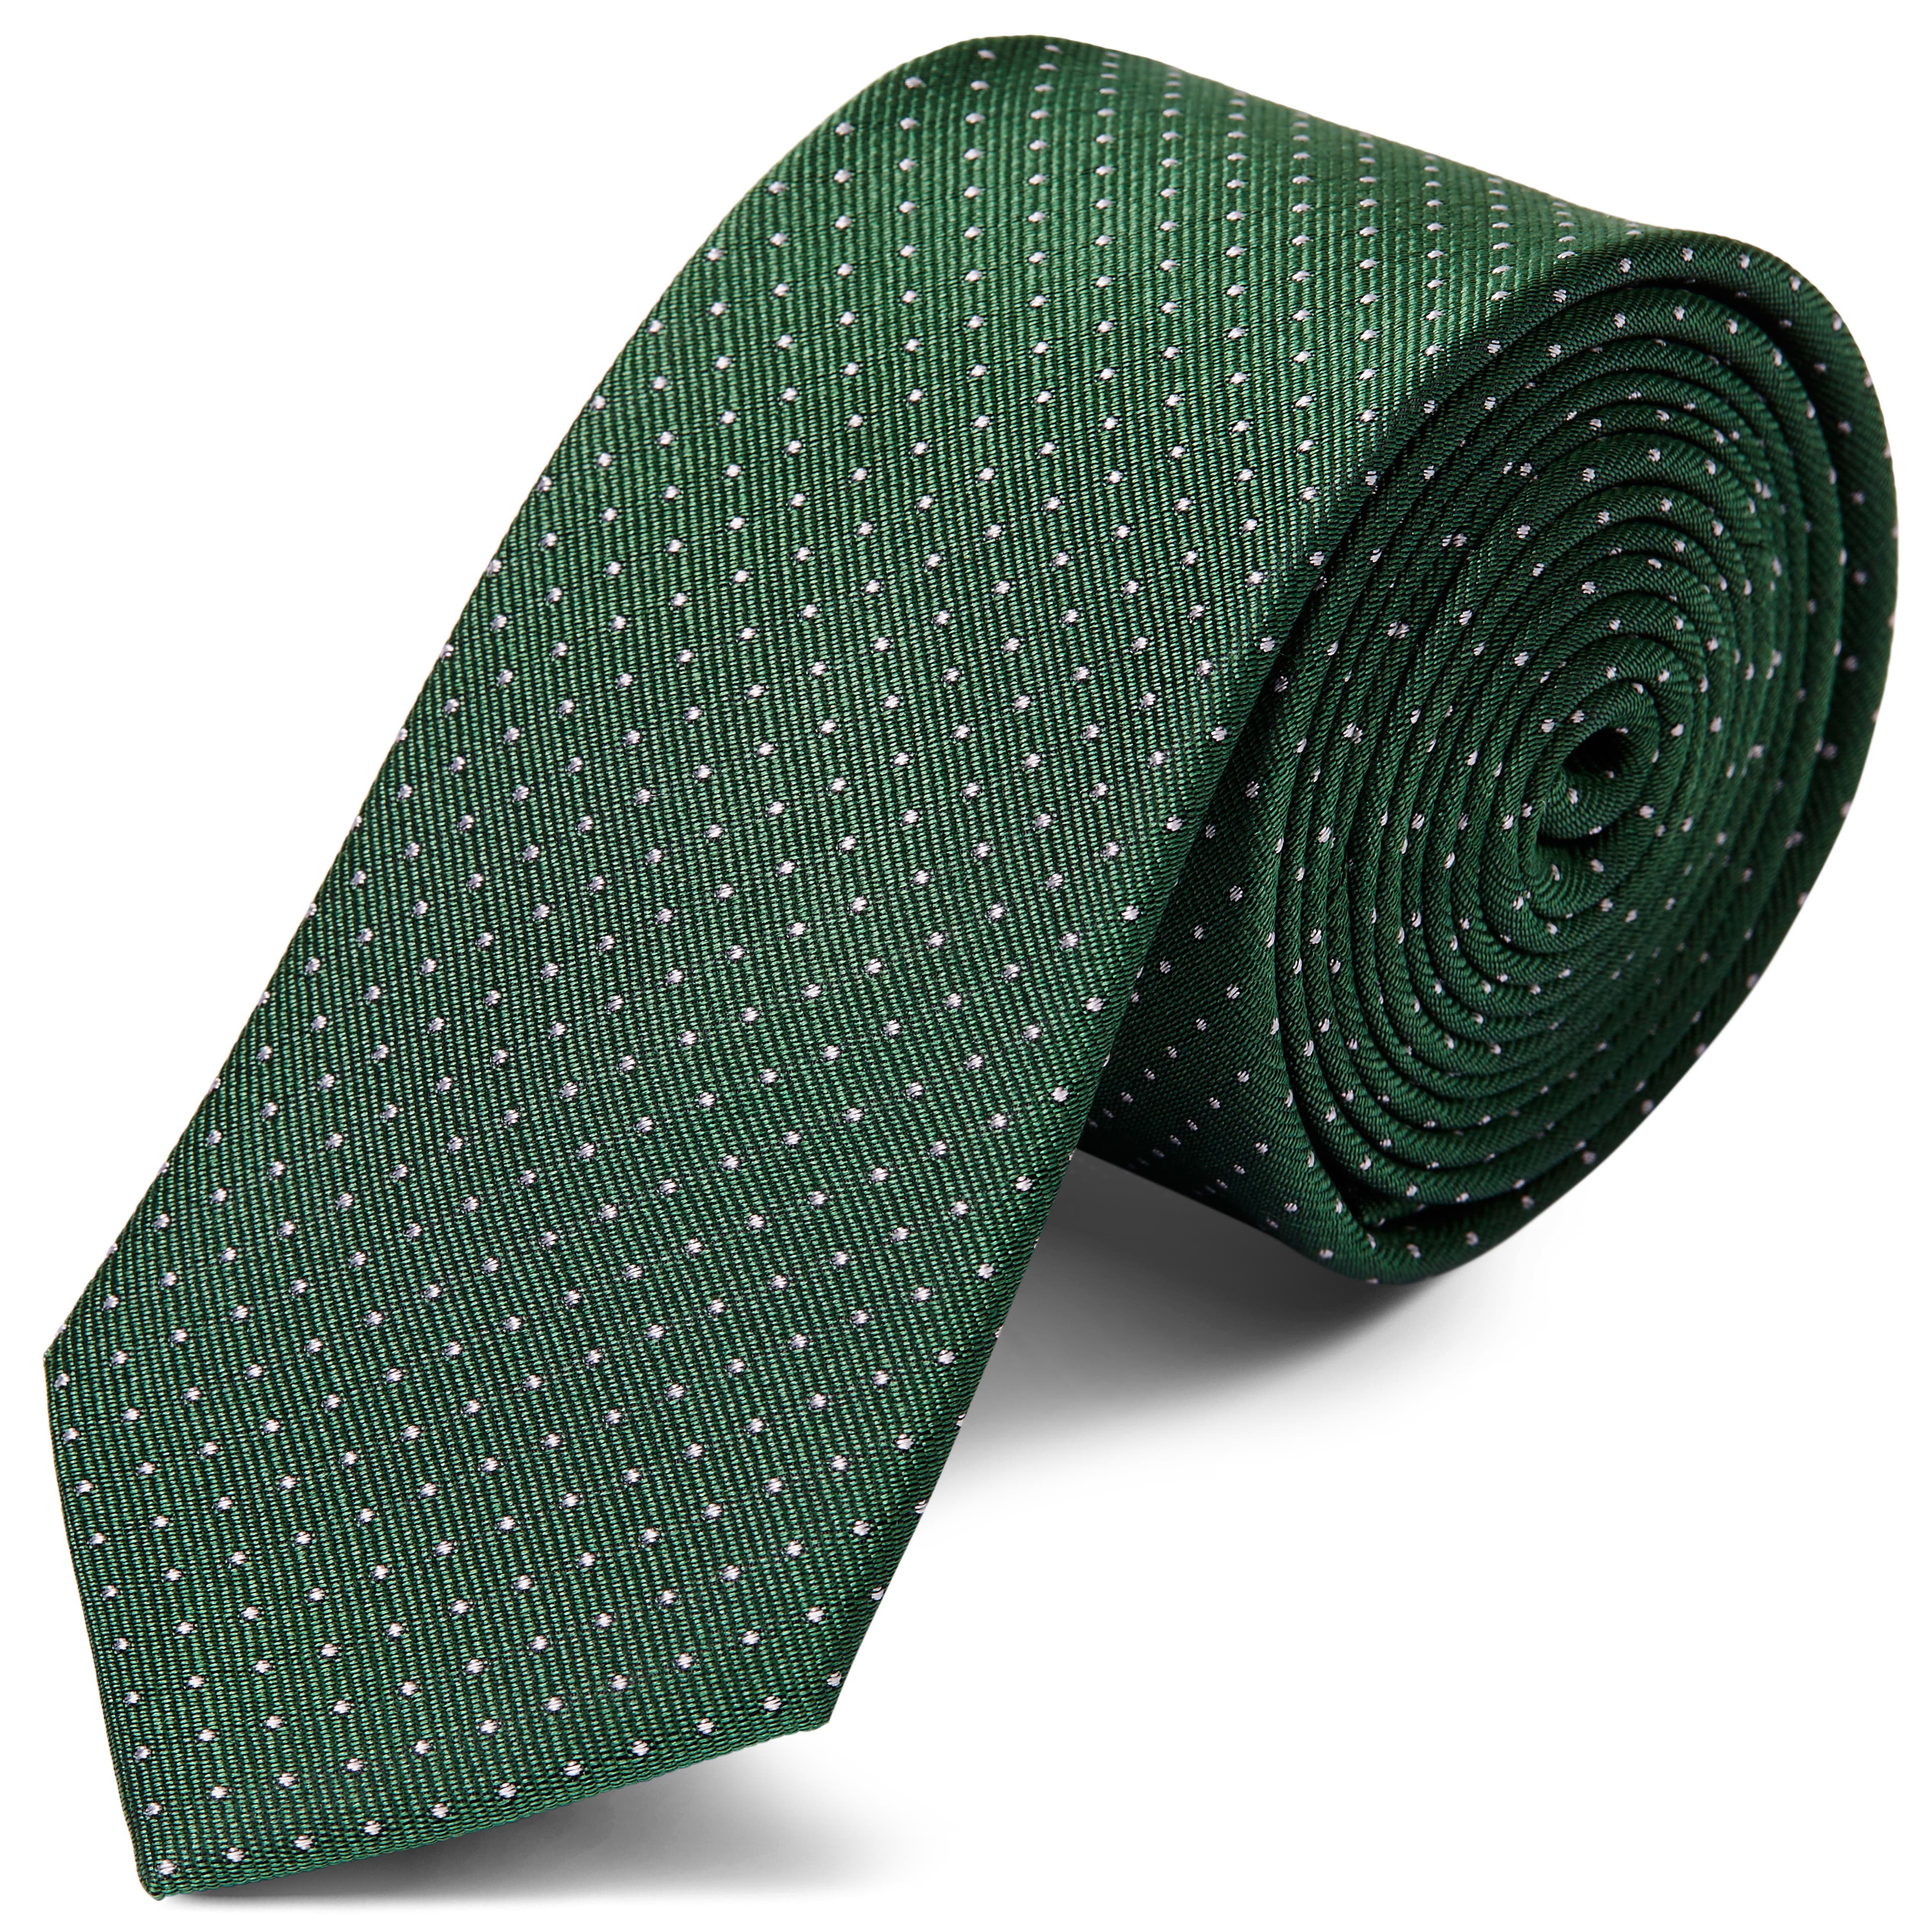 Cravate en soie verte à pois blancs - 6 cm